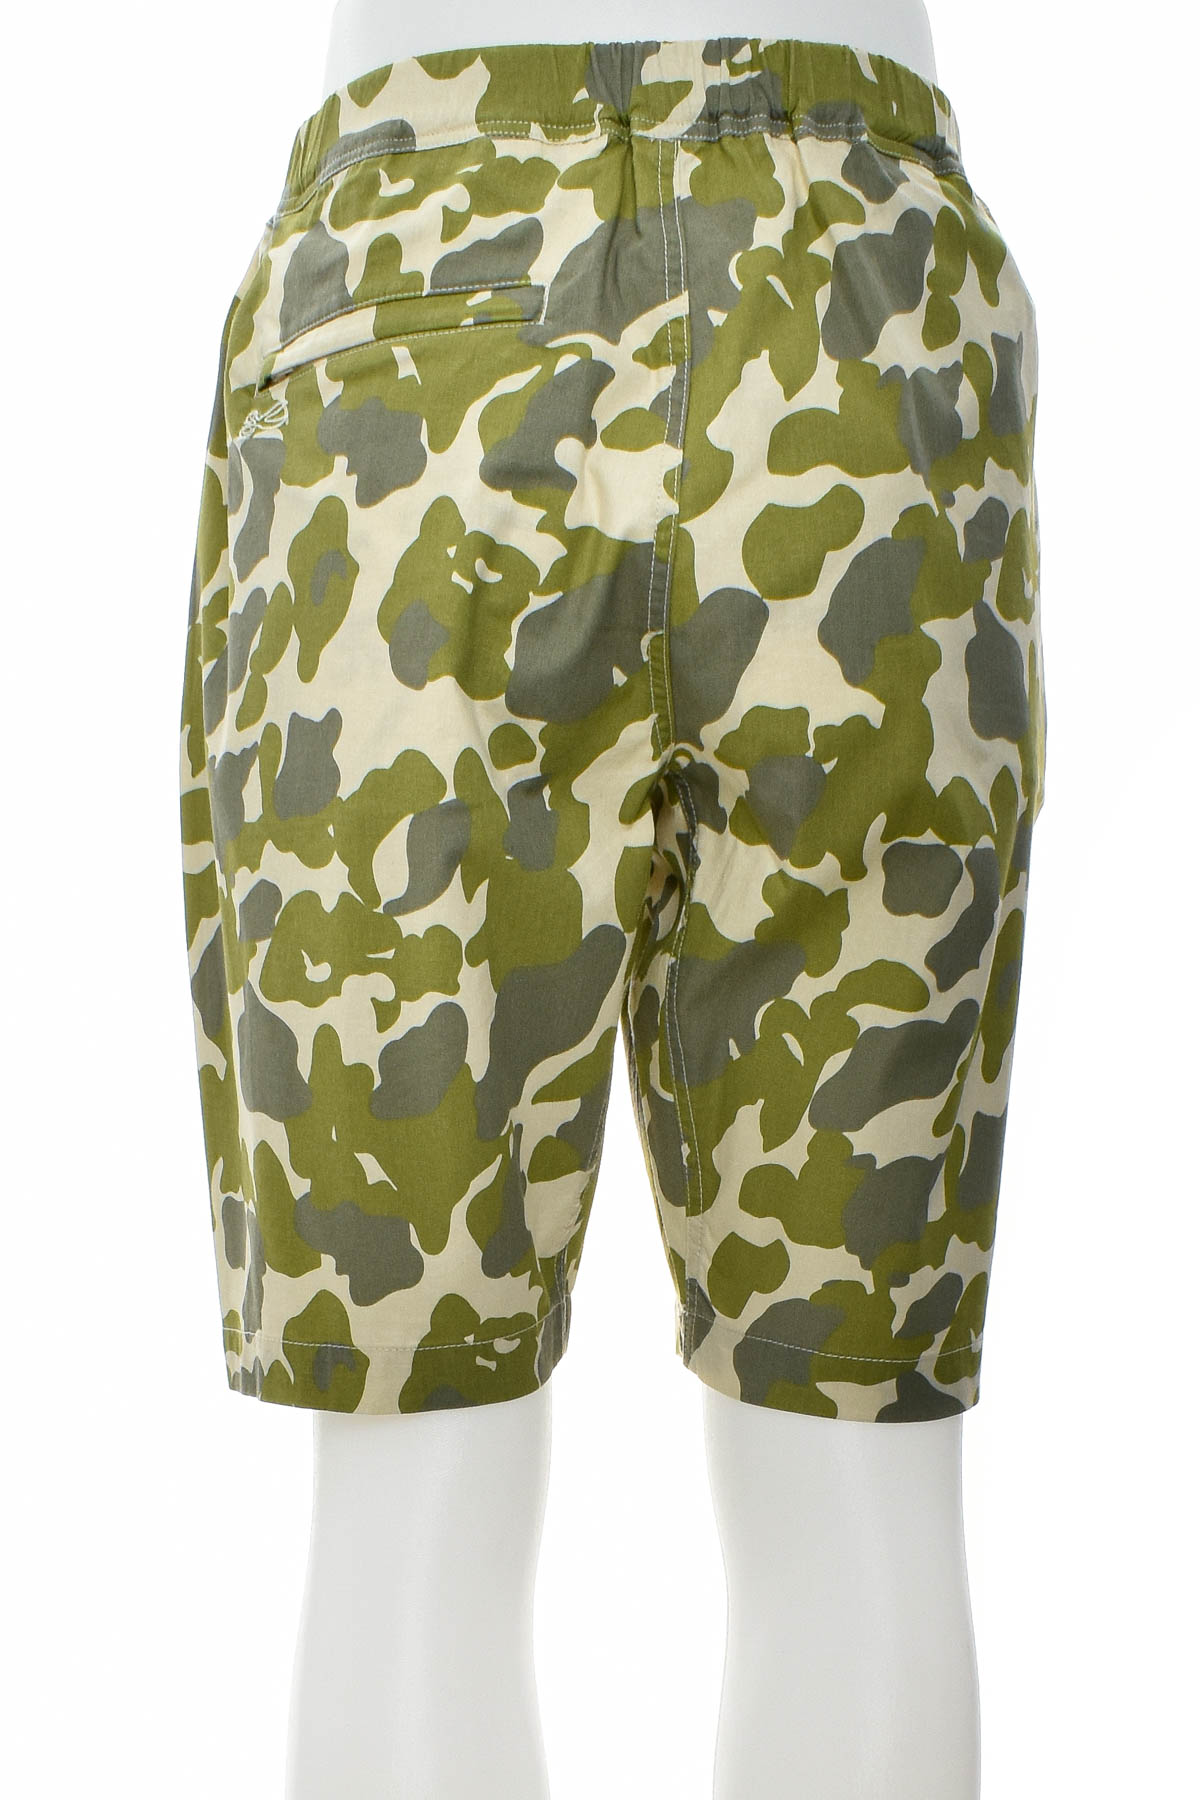 Men's shorts - Denham - 1